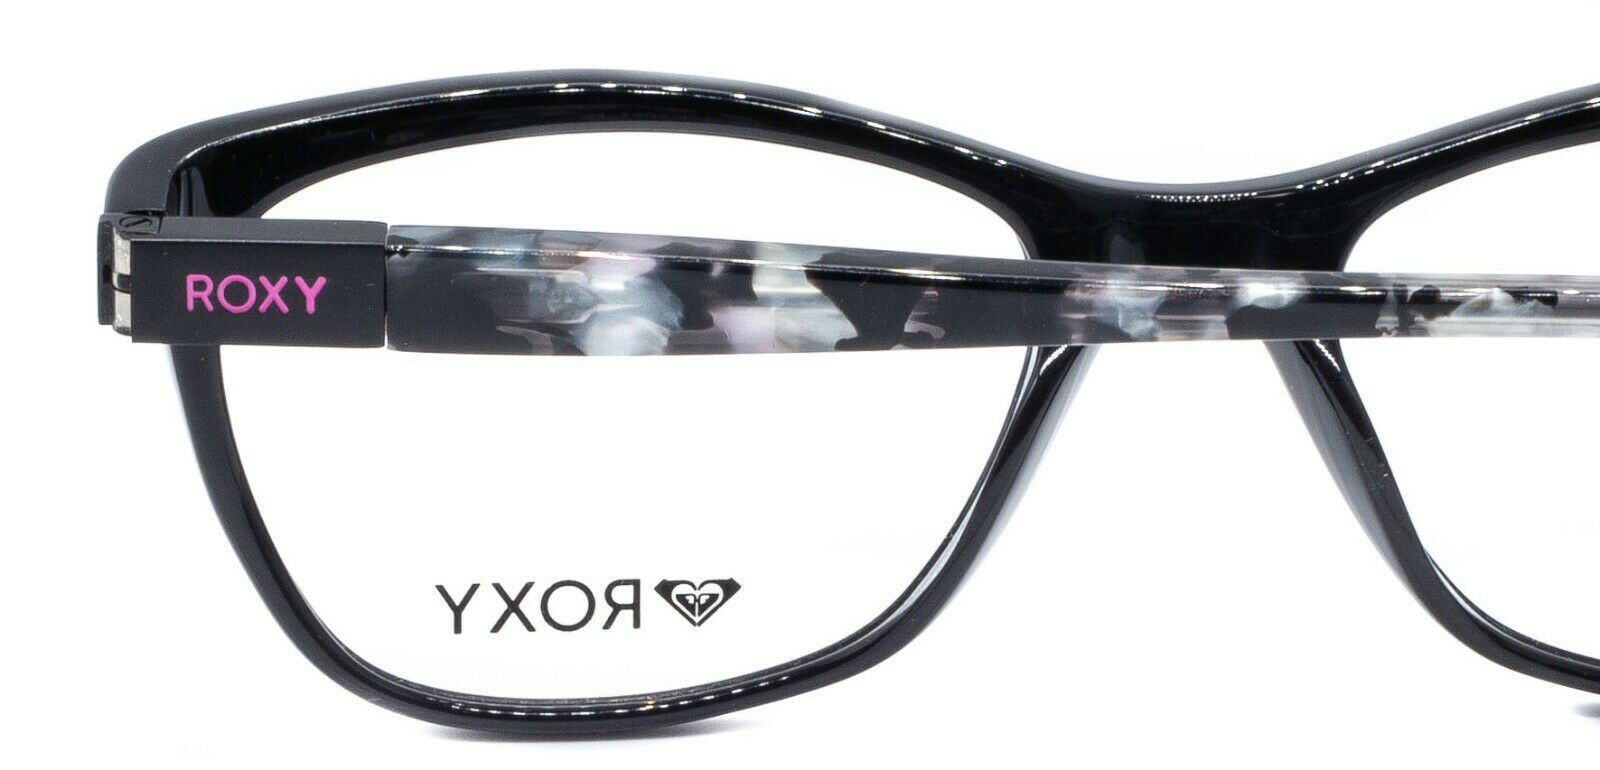 ROXY ERIKA ERJEG03025/DBLK 51mm Eyewear FRAMES Glasses RX Optical Eyeglasses New